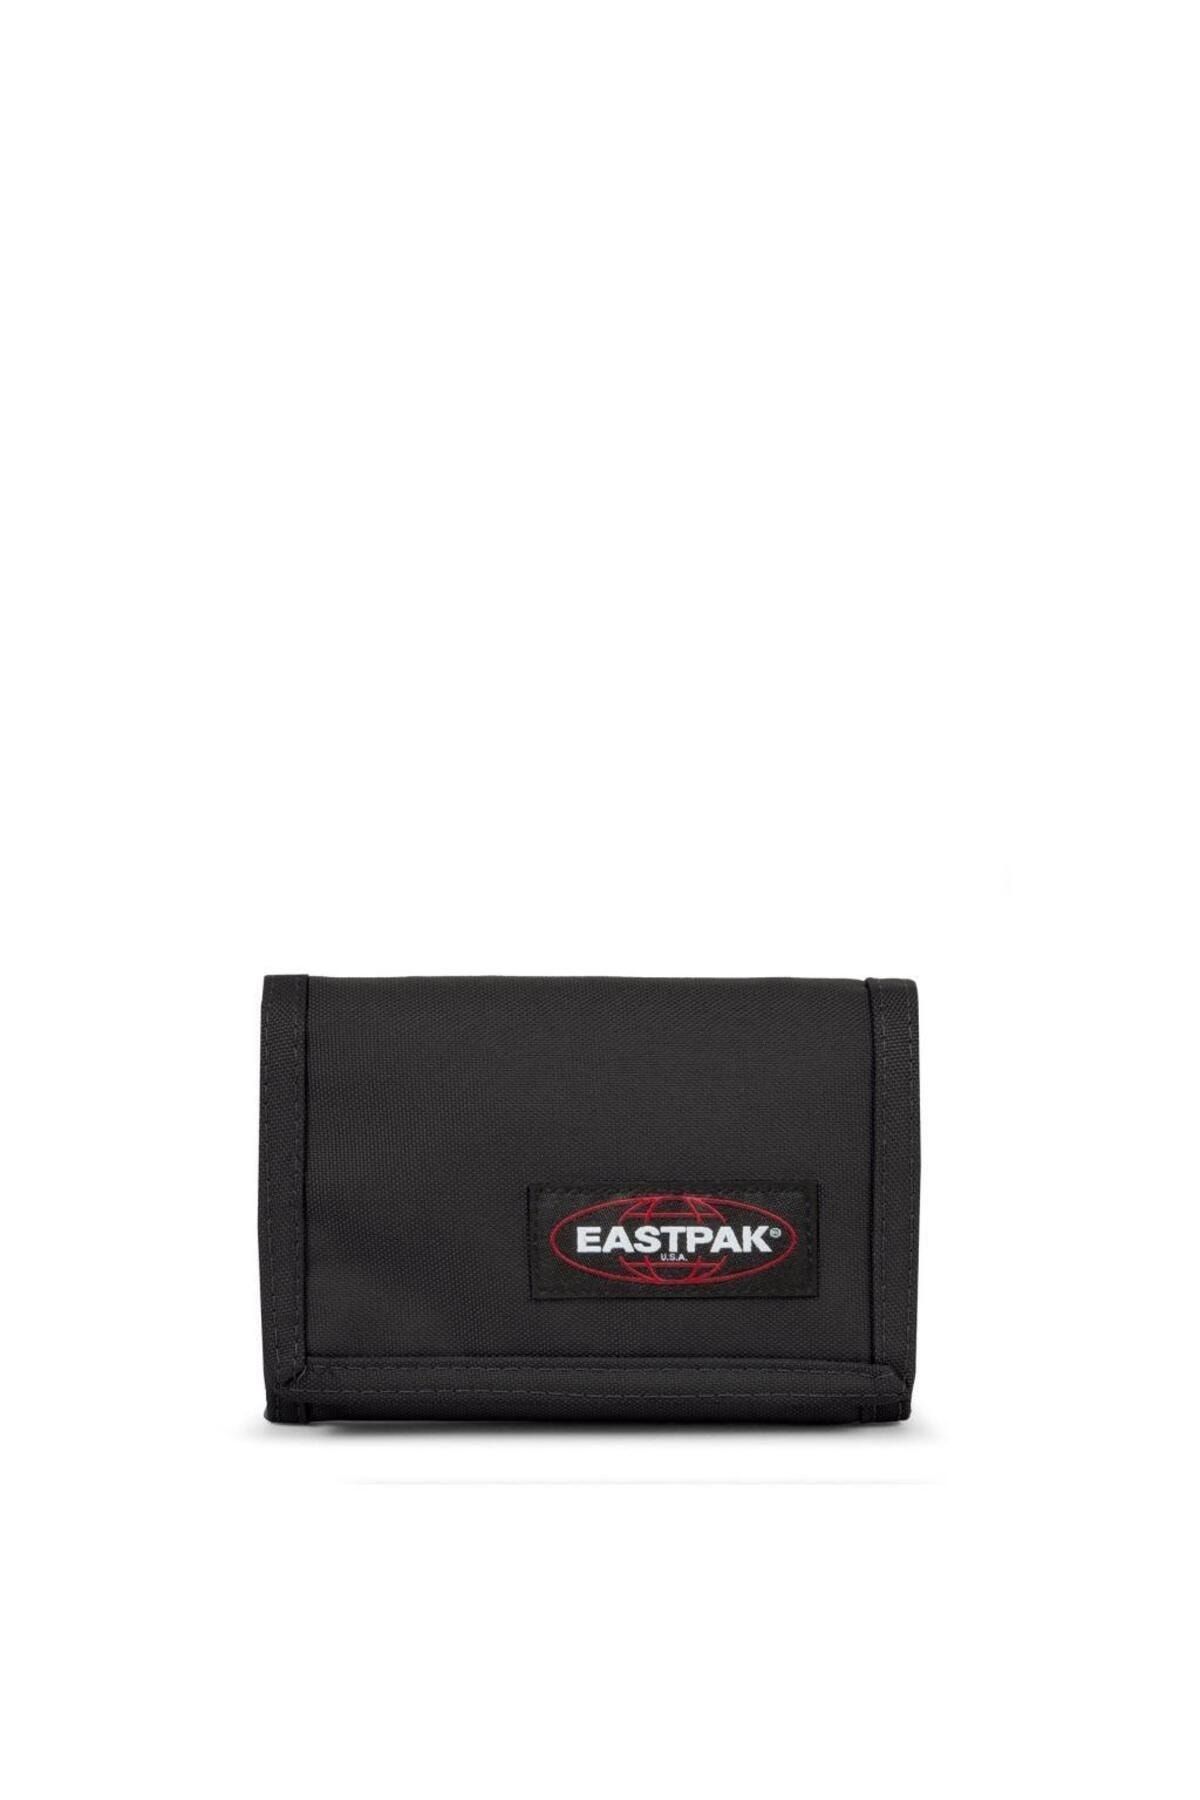 Eastpak Crew Single Kumaş Cüzdan Black EK00037100081